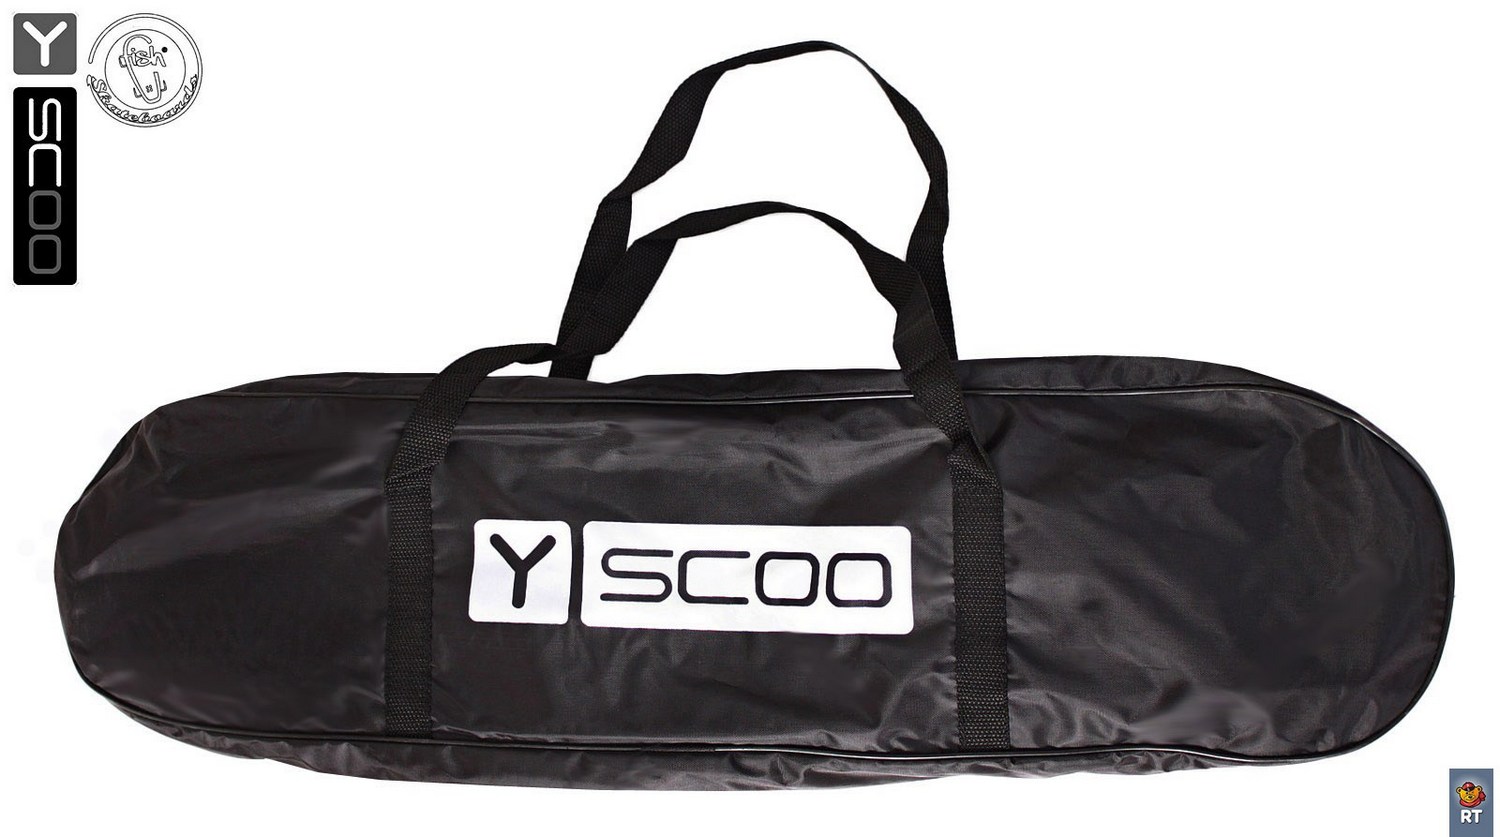 Скейтборд пластиковый Y-Scoo Longboard Shark Tir 31" 408-Ch с сумкой, красно-черный  